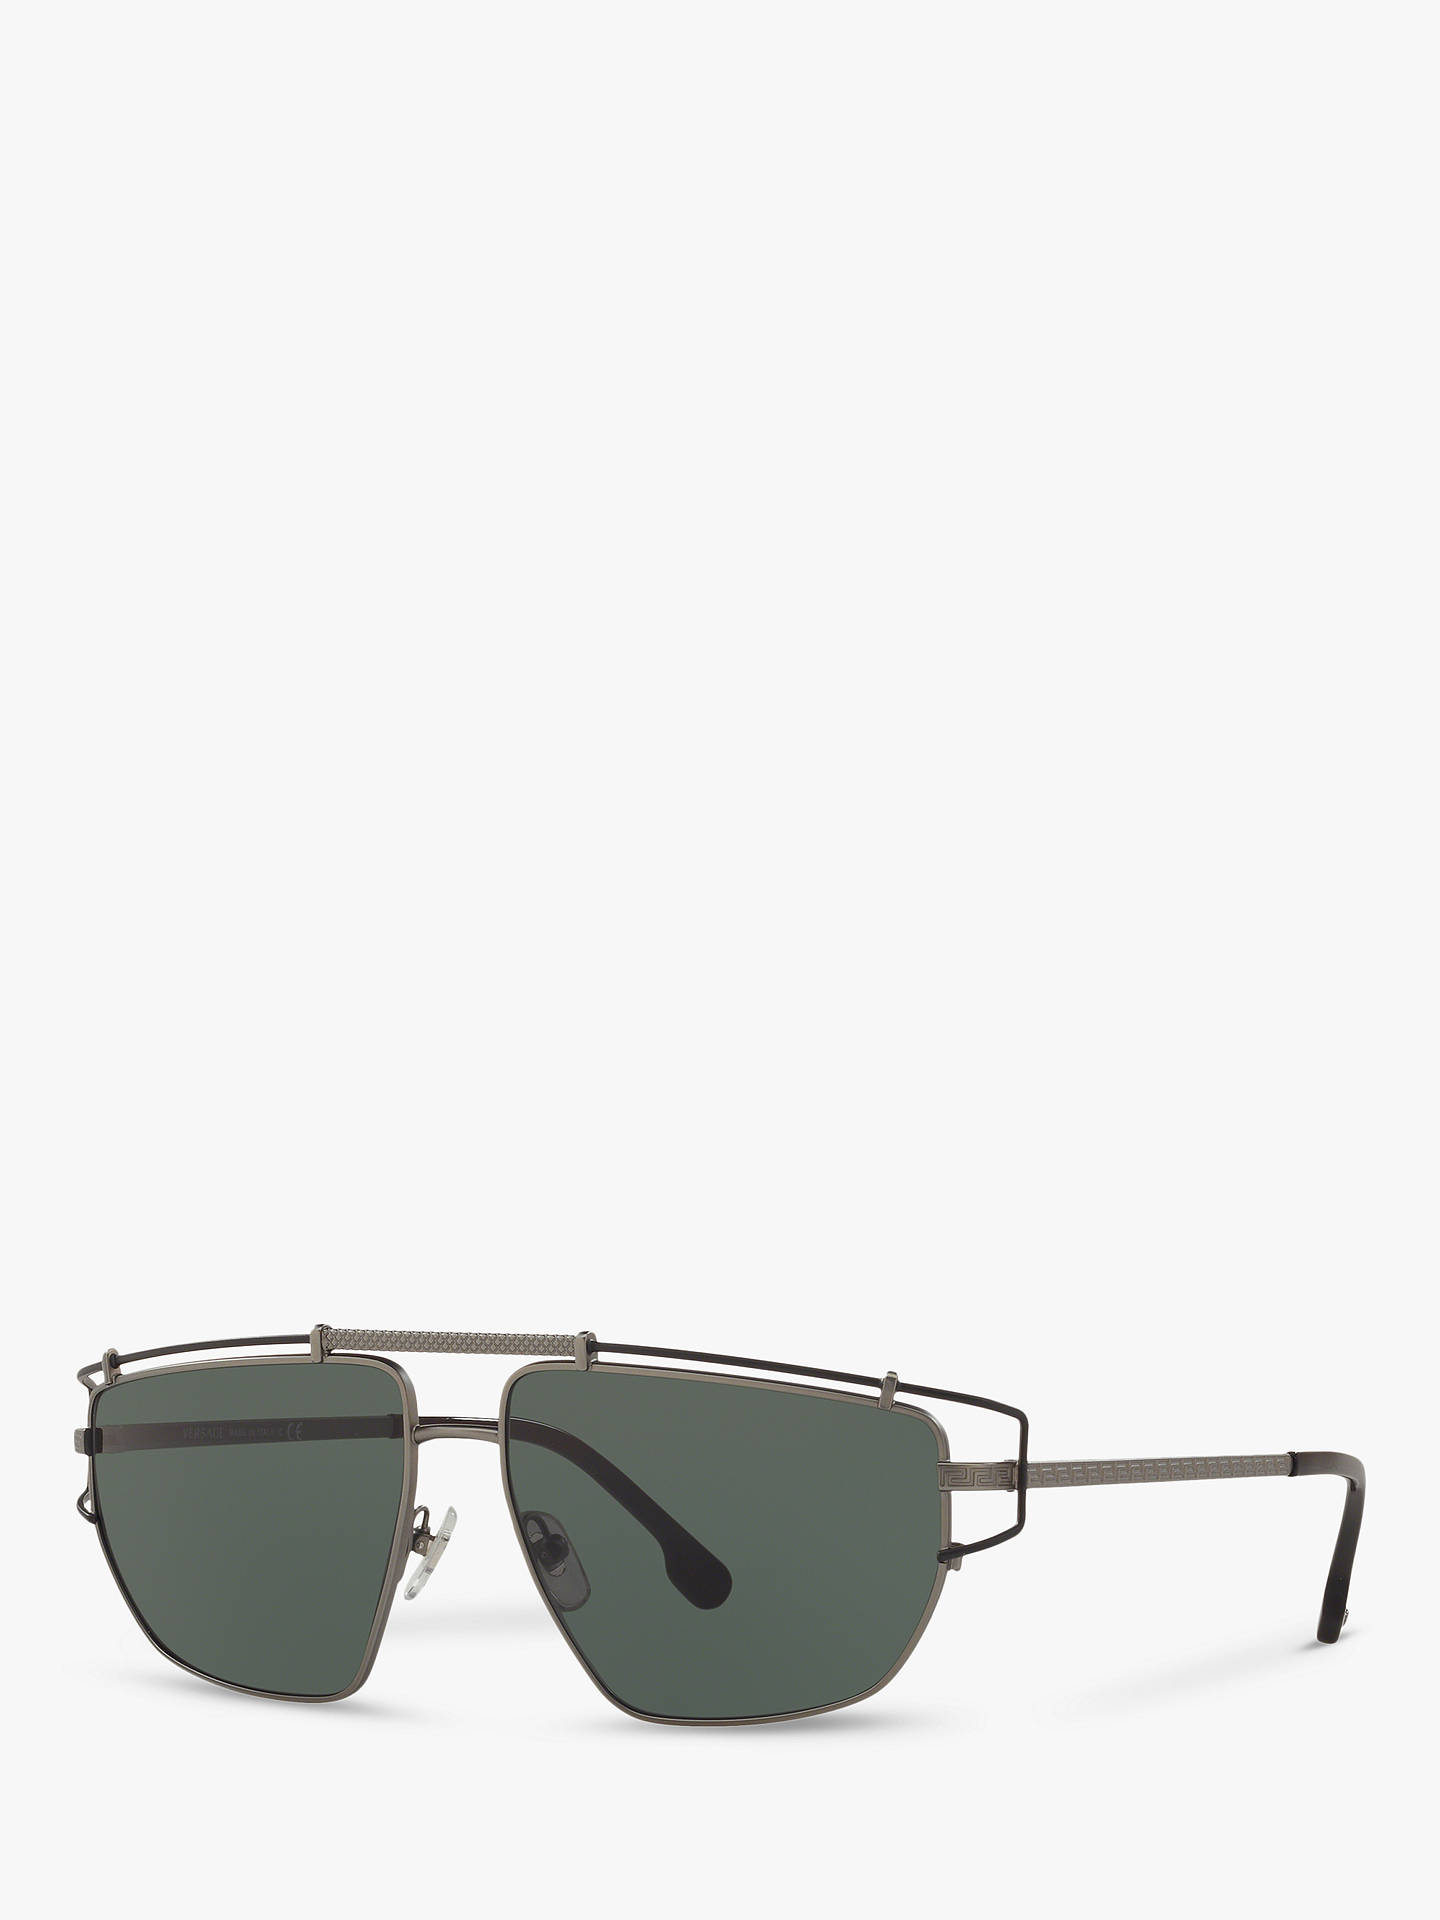 Versace VE2202 Men's Square Sunglasses, Gunmetal/Green at John Lewis ...